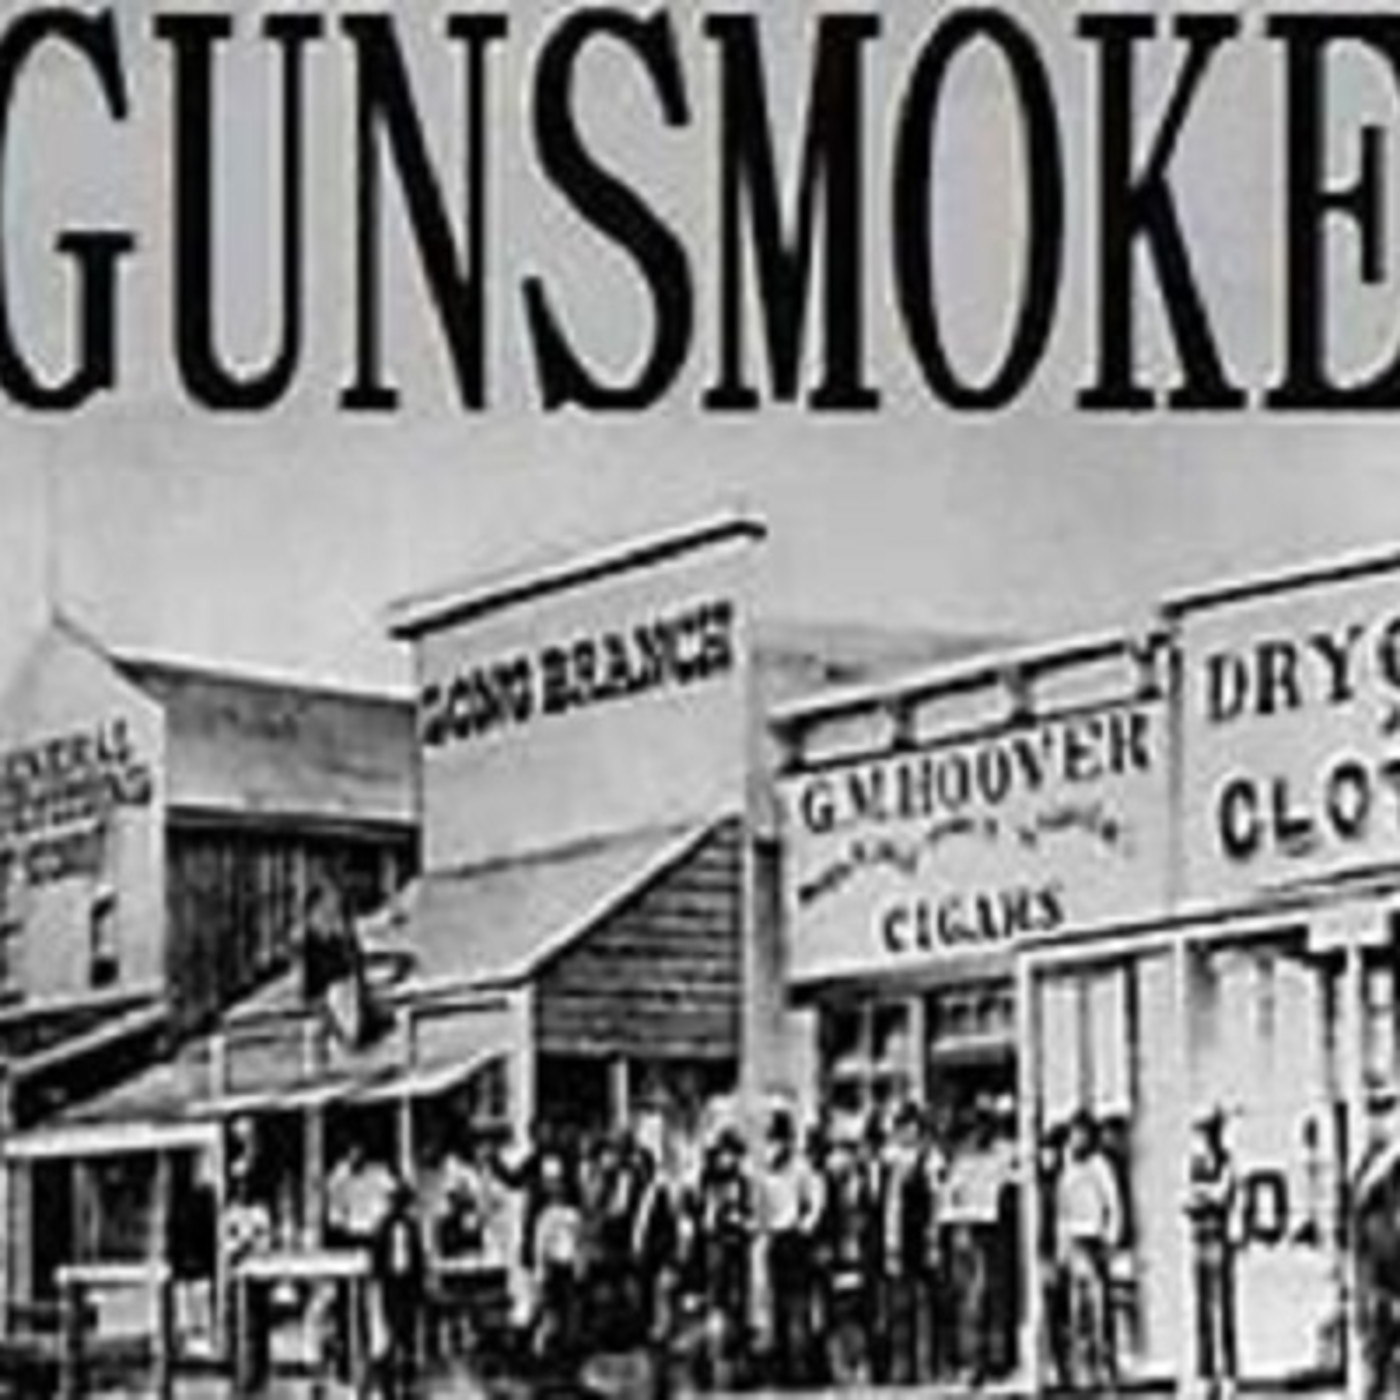 Gunsmoke 52-05-24 (005) Ben Slade’s Saloon